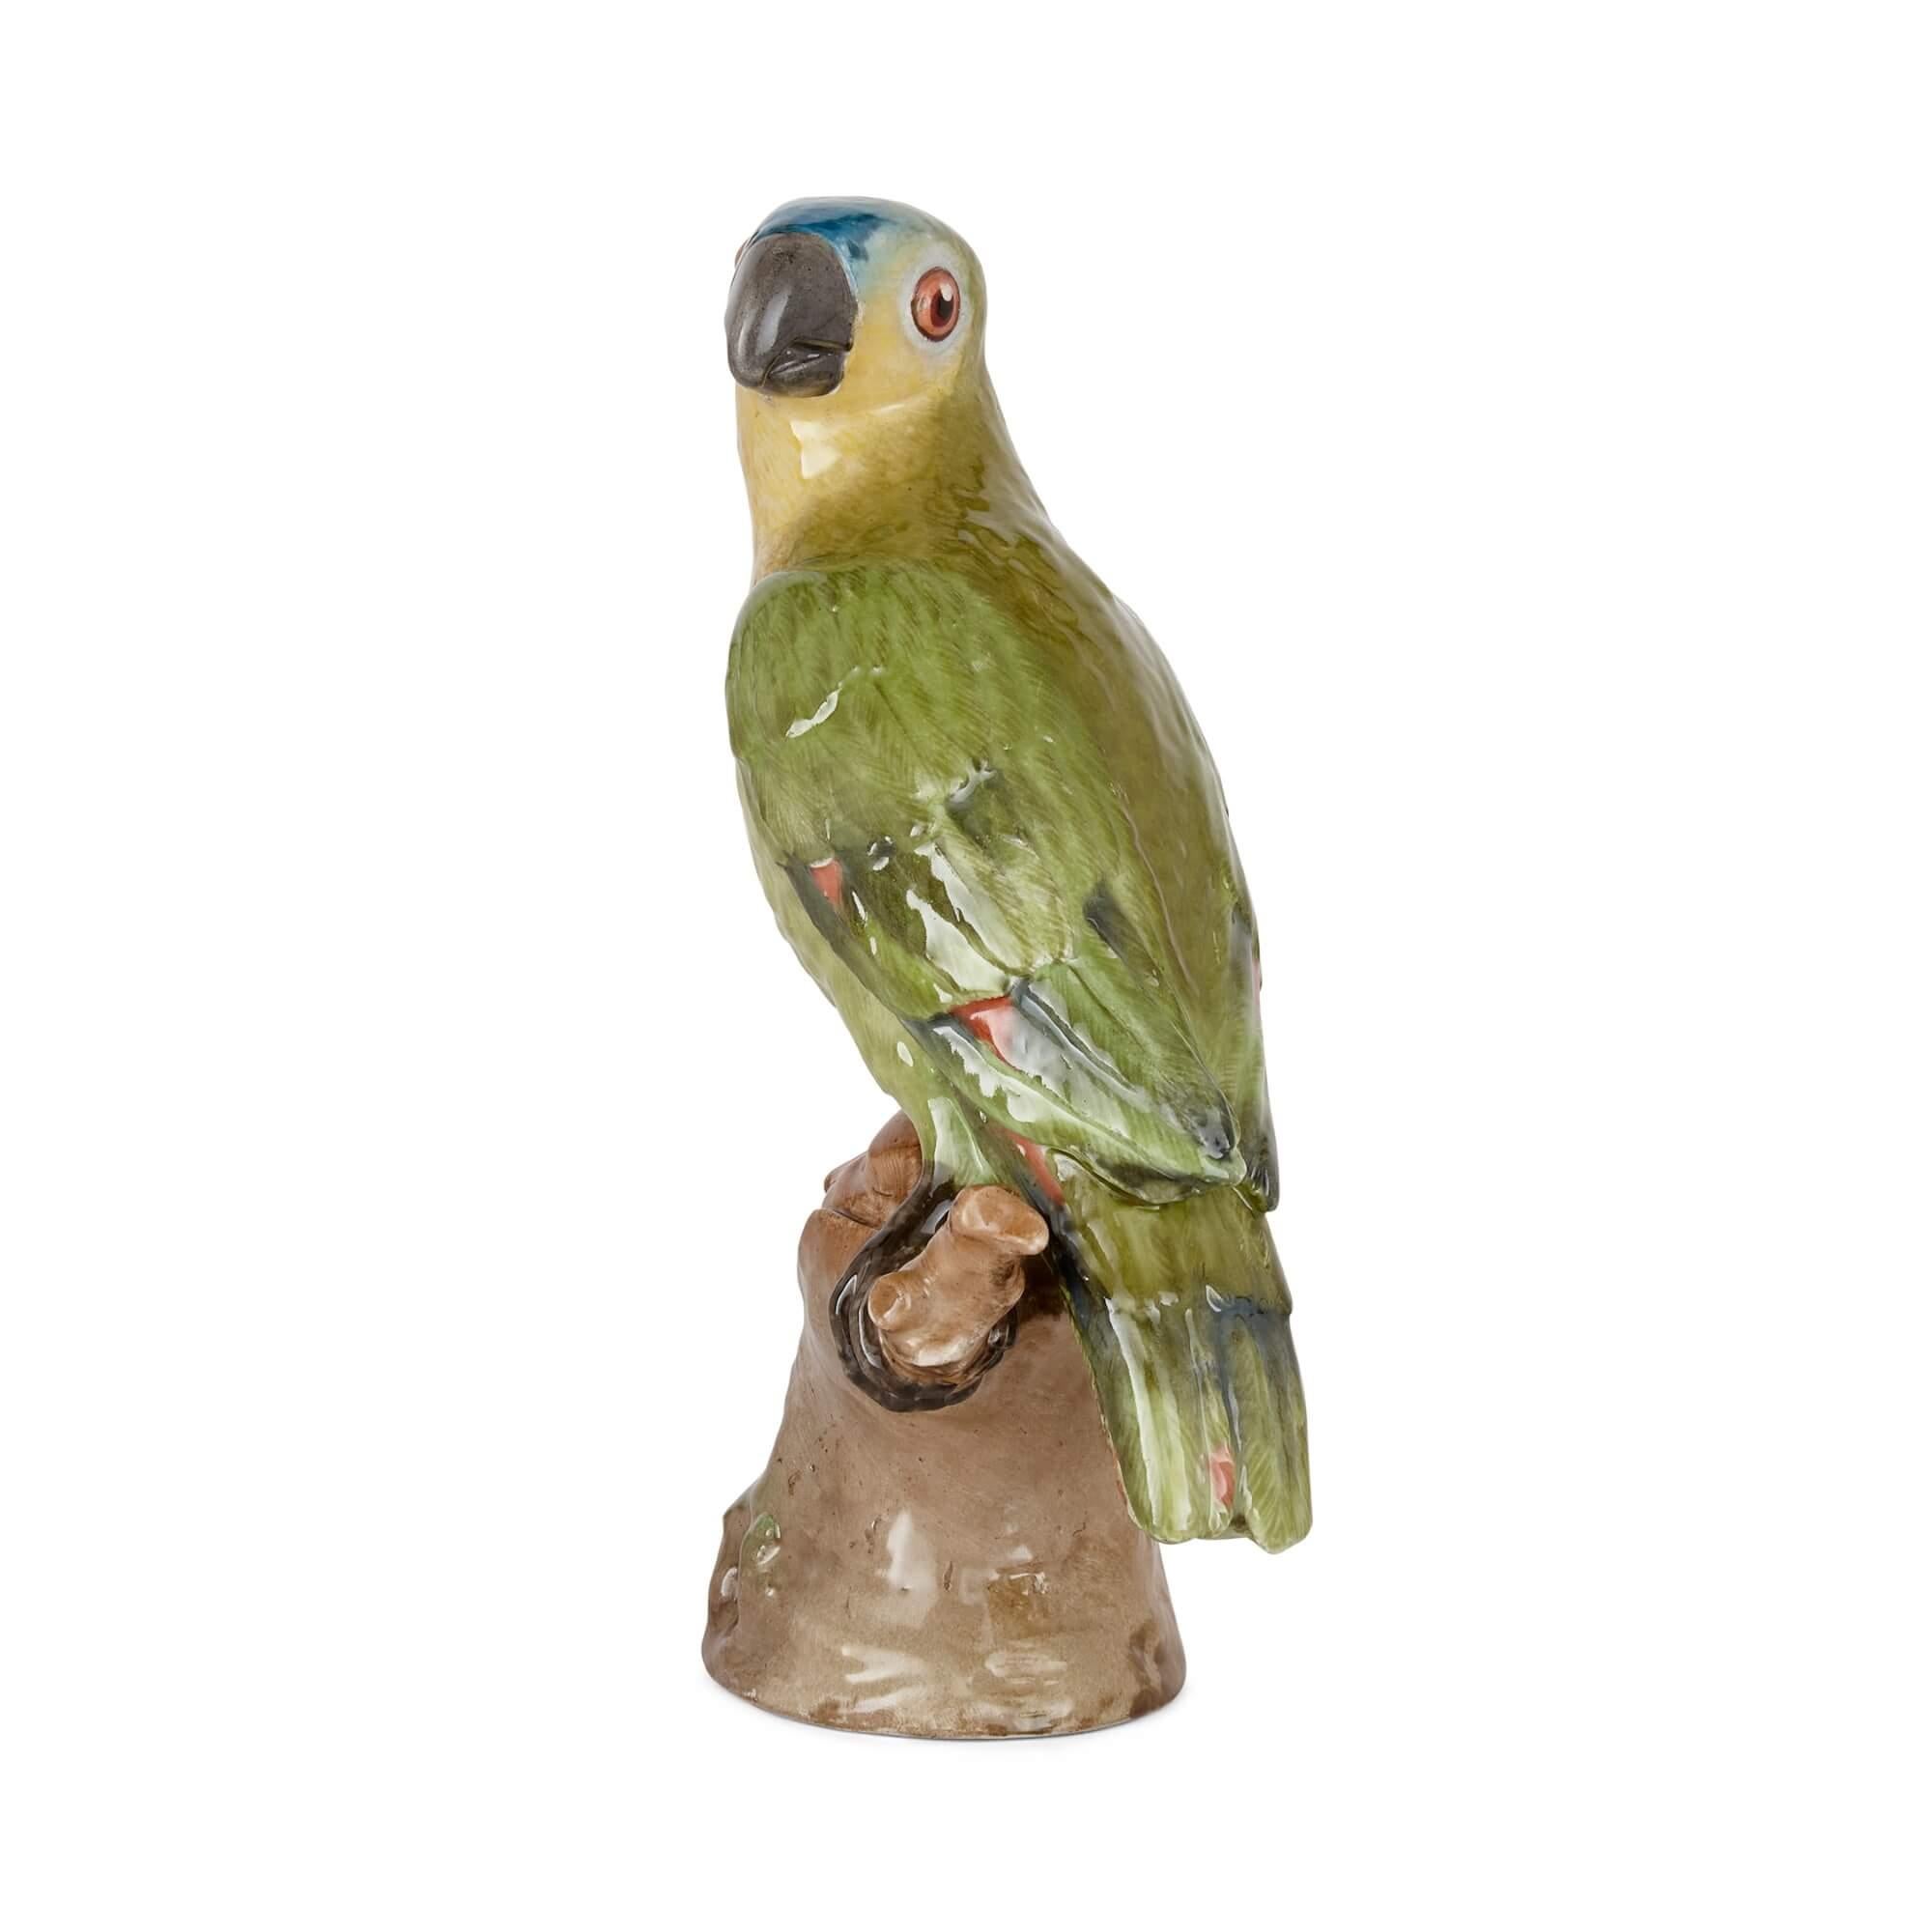 KPM-Porzellanmodell eines Papageis
Deutsch, Ende 19. Jahrhundert 
Höhe 23cm, Breite 12cm, Tiefe 9cm

Diese bezaubernde und reizvolle Tierskulptur der führenden deutschen Porzellanmanufaktur KPM ist ein bemaltes Porzellanmodell eines Vogels aus dem